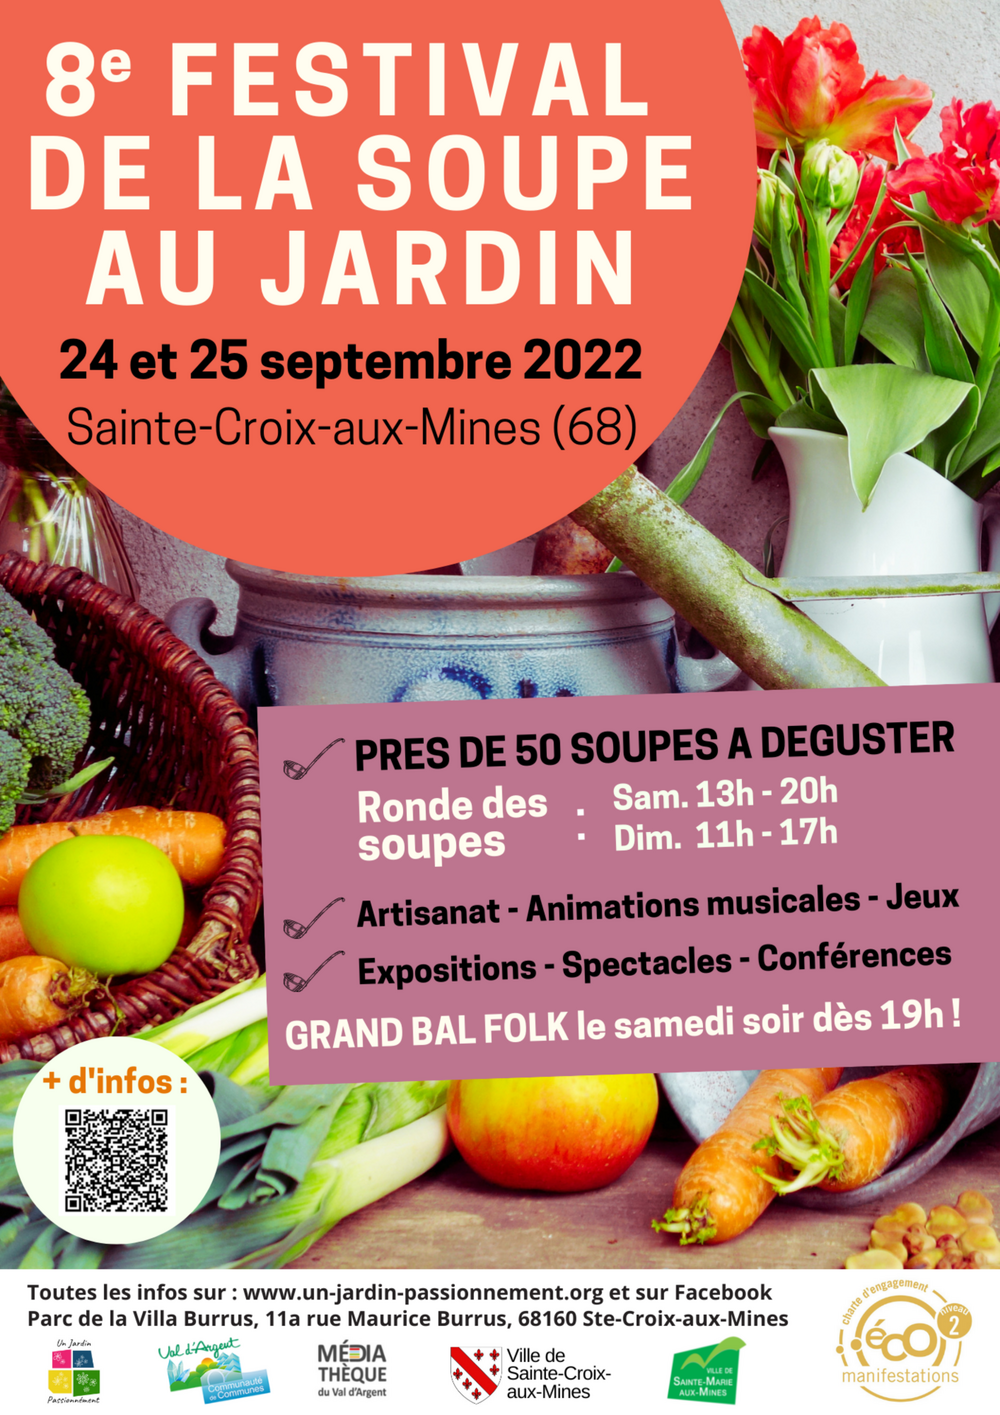 8e Festival de la Soupe au Jardin 2022